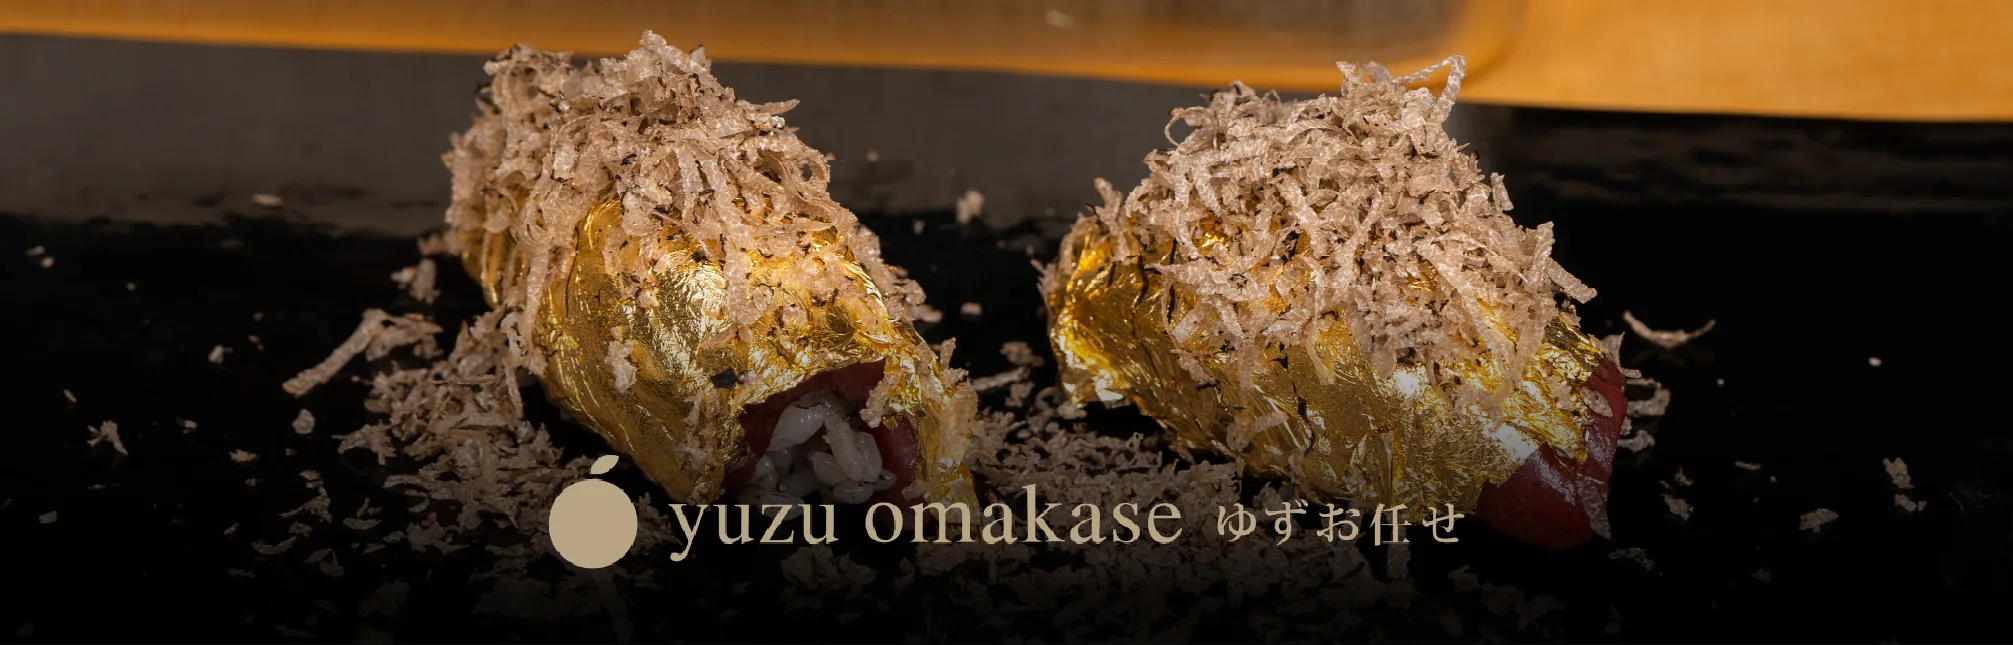 Balancing Flavor and Nutrition at Yuzu Omakase